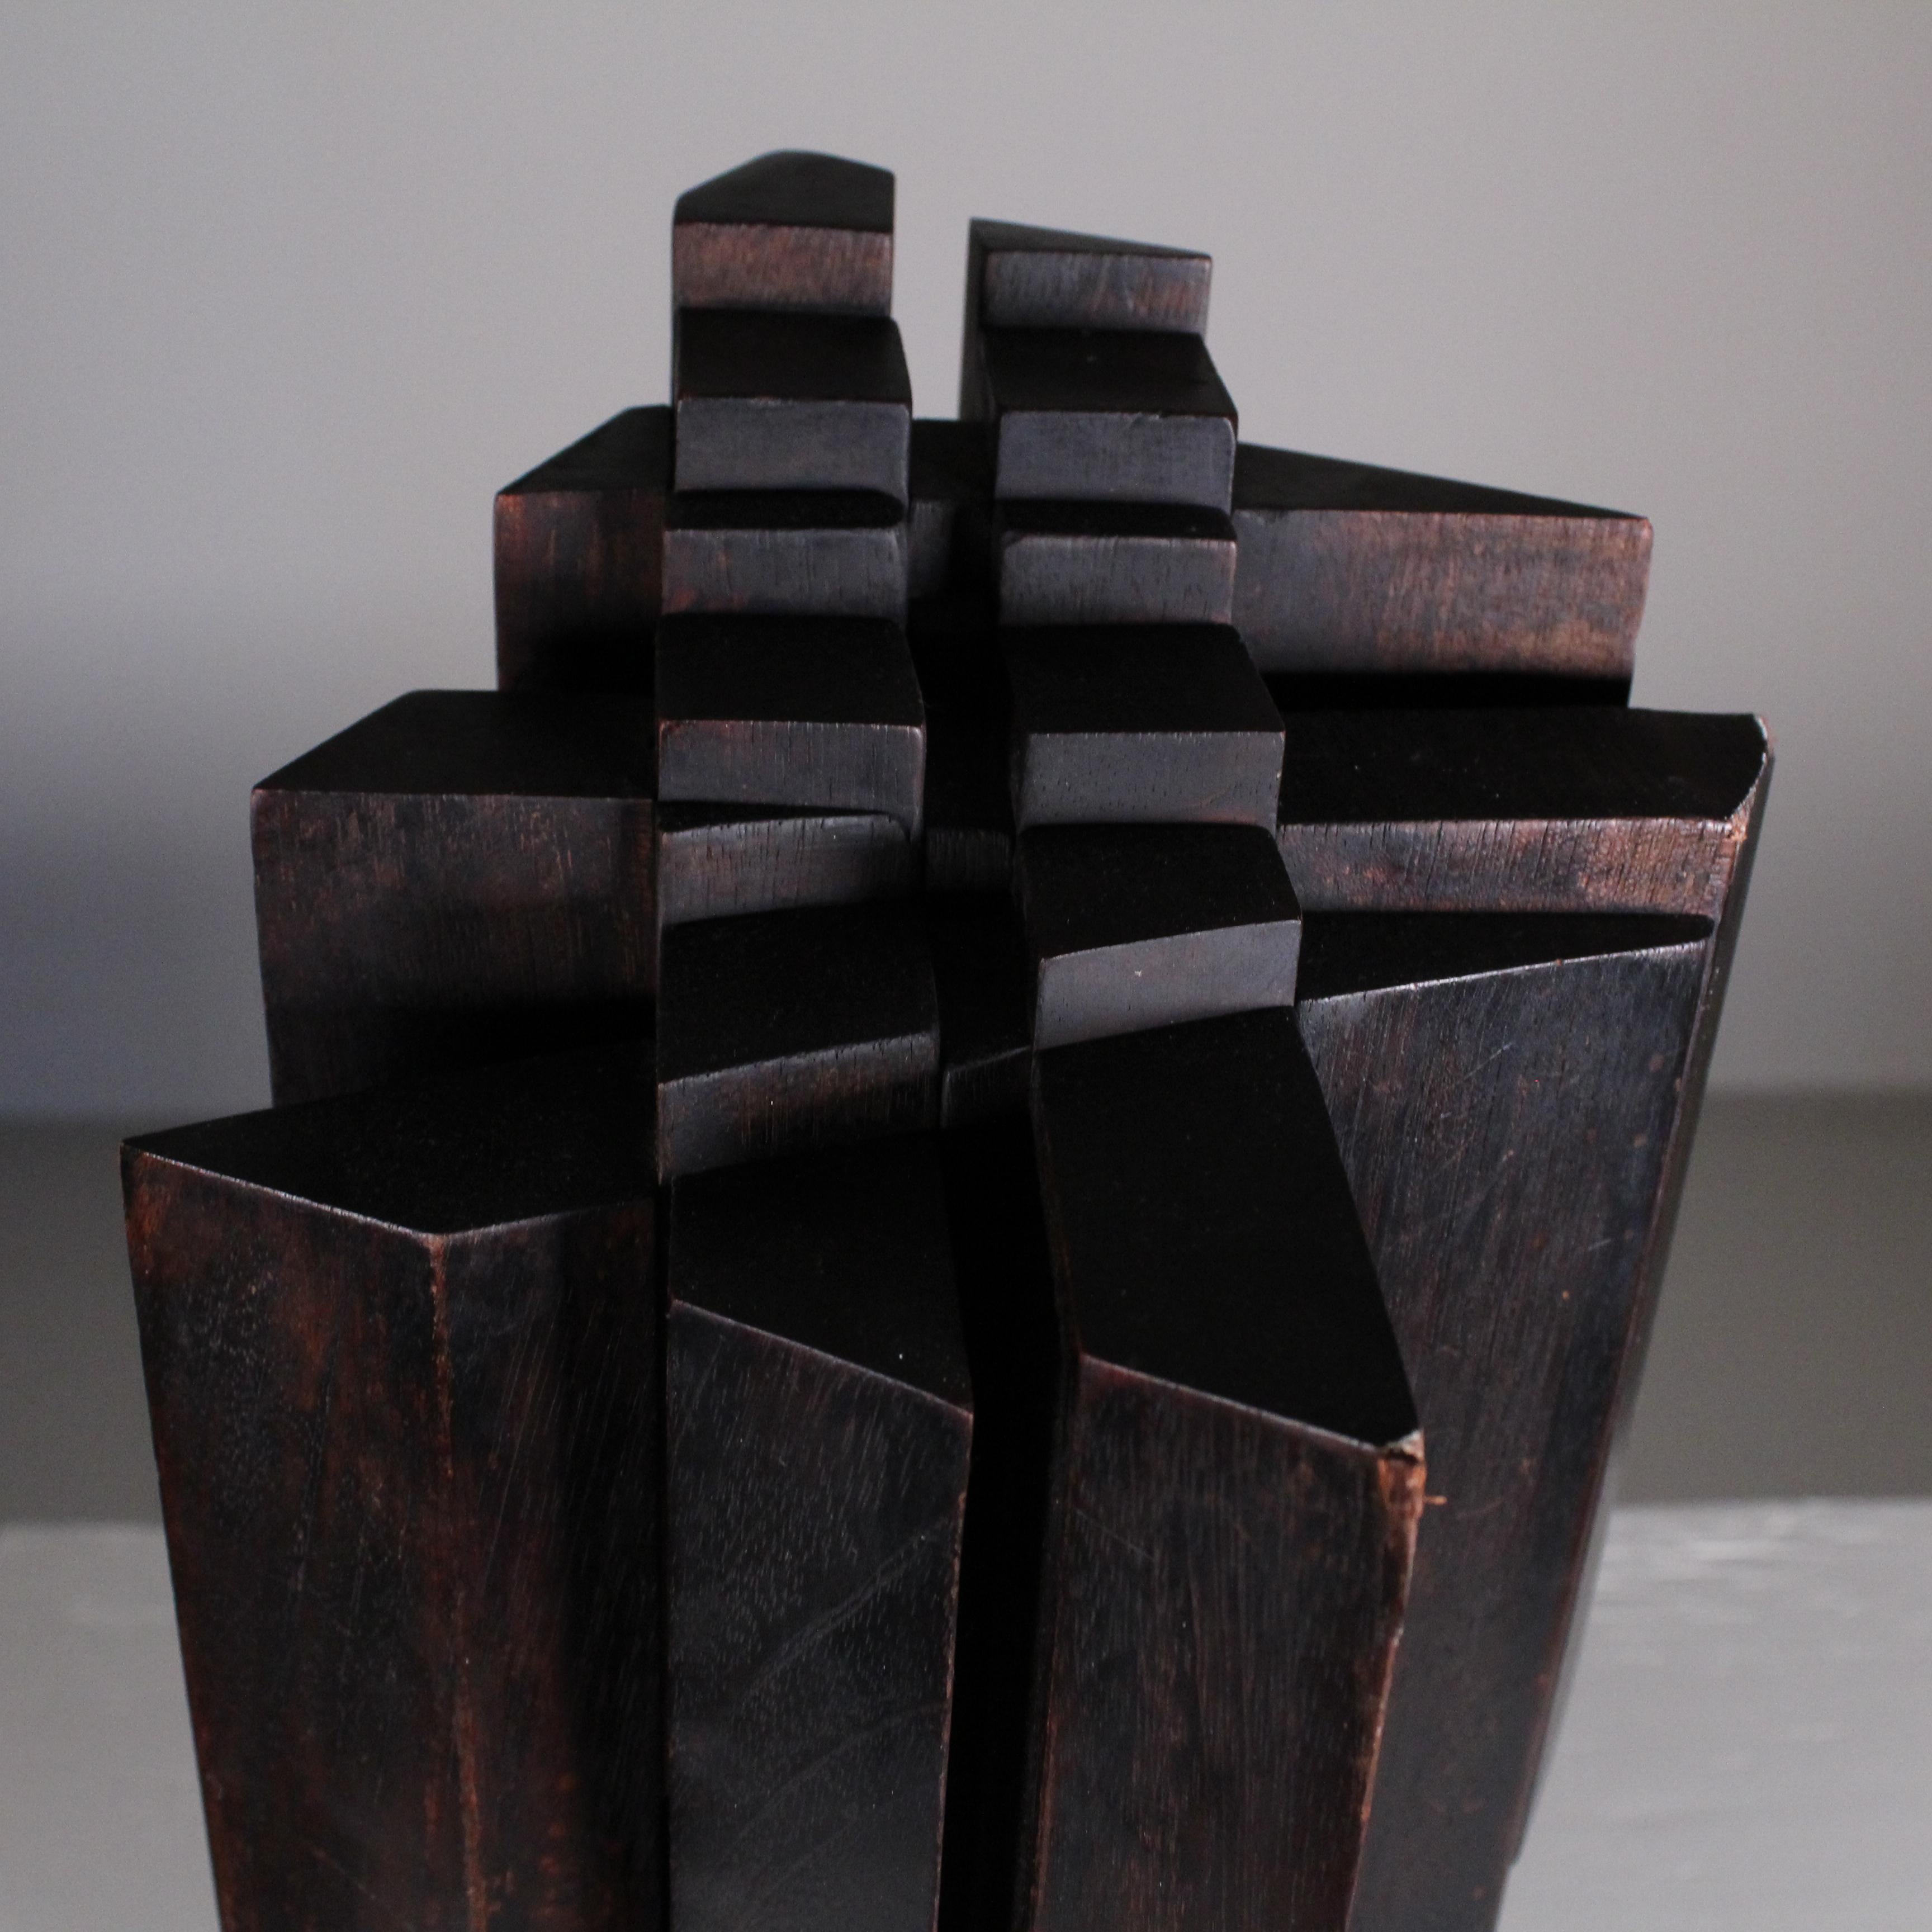 Wood sculpture by Ben Ormenese 10